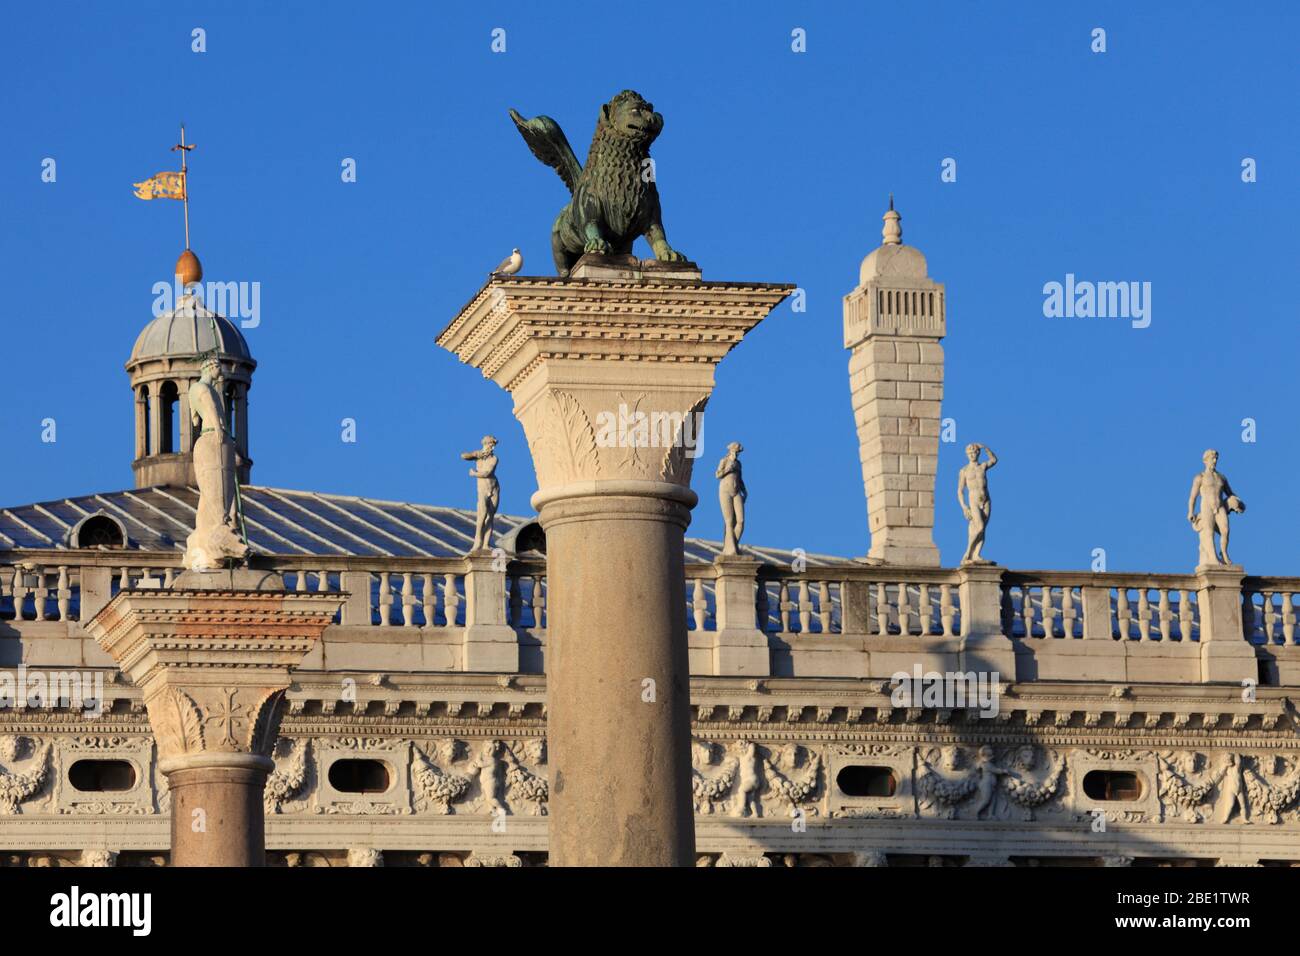 I-Venedig: Piazzetta San Marco: Markussäule und Theodorussäule vor den Statuen der Bibliotheca National Marciana Stockfoto